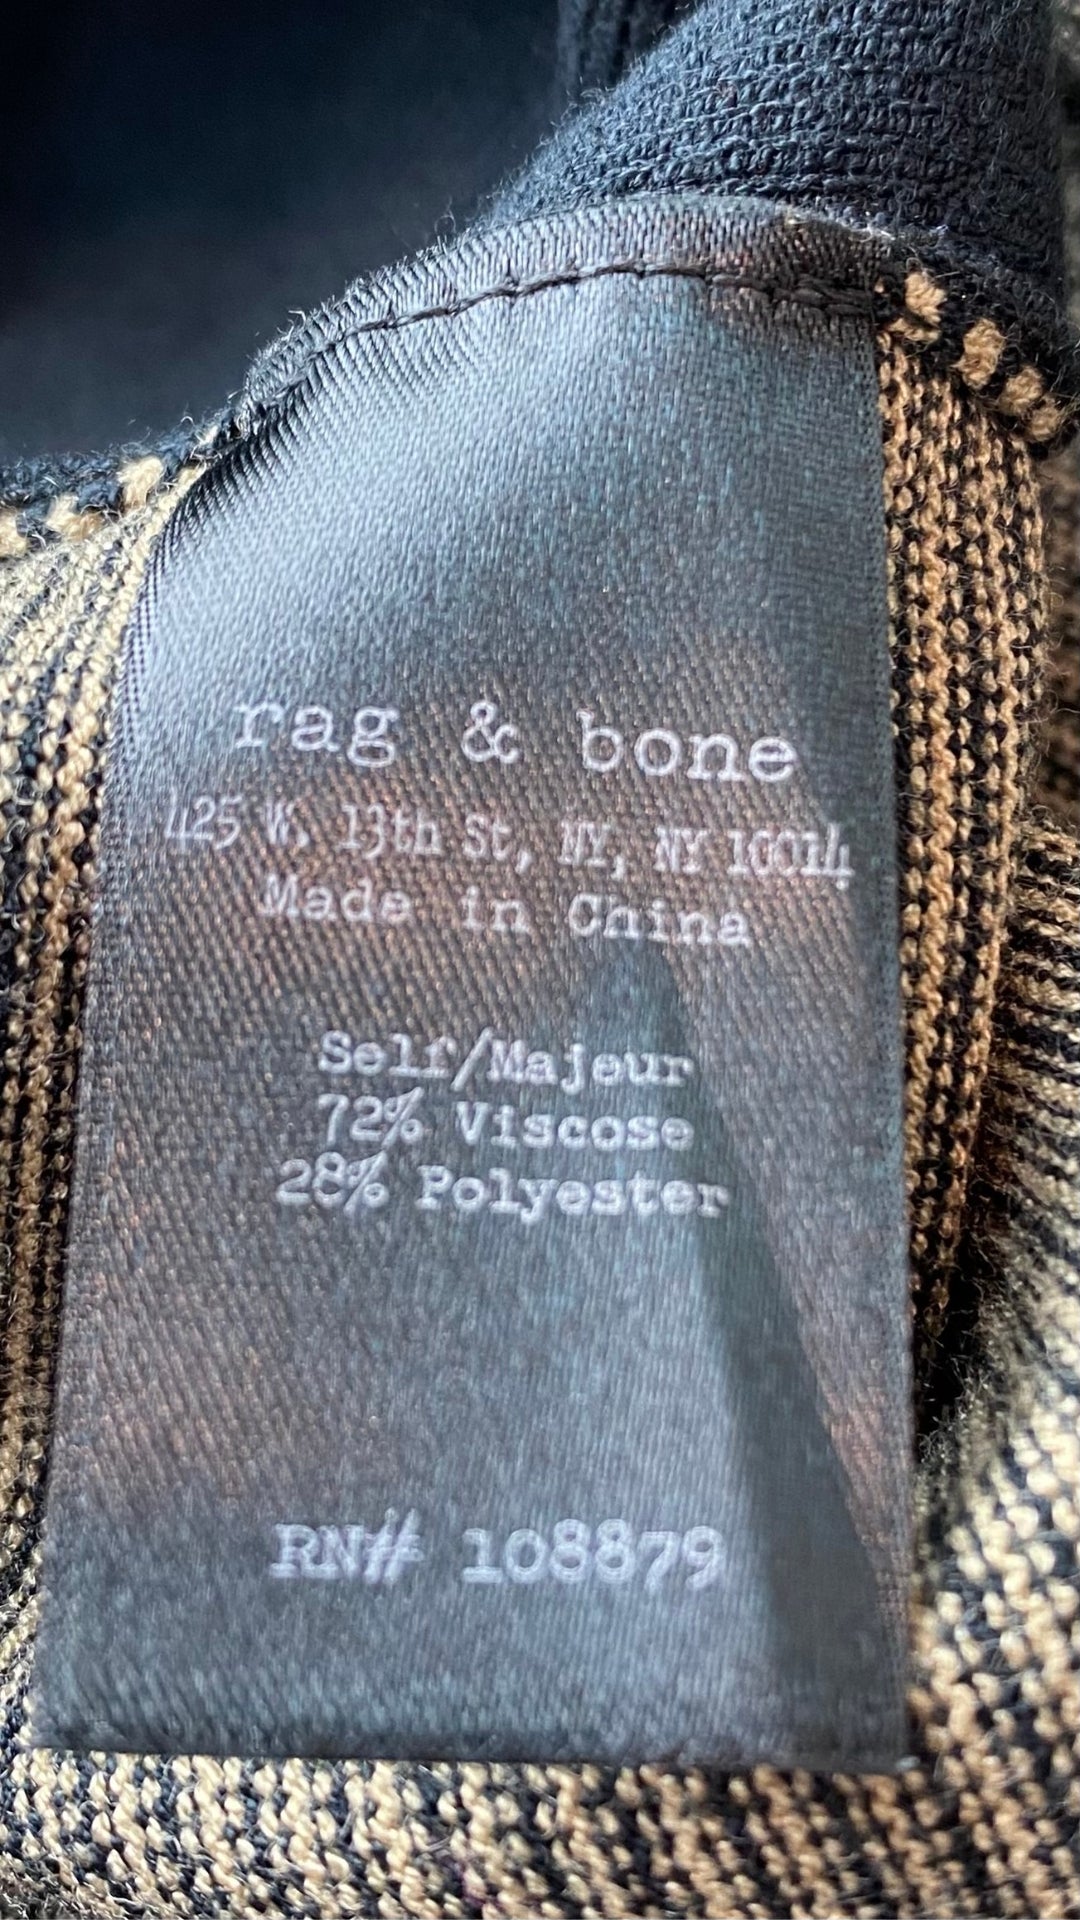 Robe ajustée en tricot à rayures Rag & Bone, taille small. Vue de l'étiquette de composition.